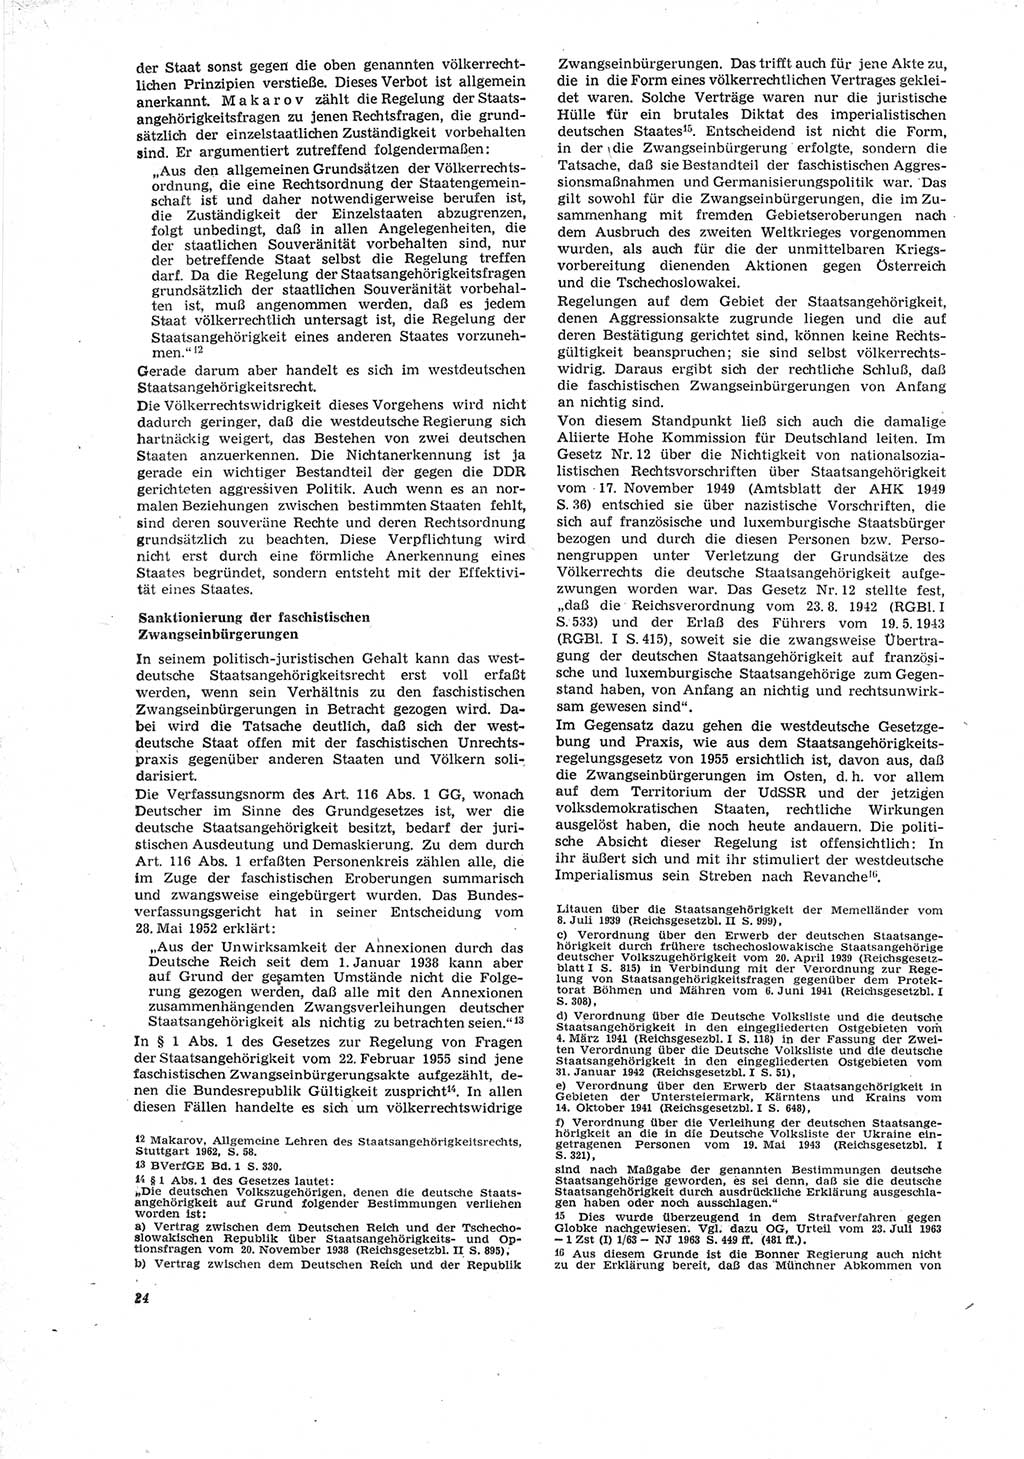 Neue Justiz (NJ), Zeitschrift für Recht und Rechtswissenschaft [Deutsche Demokratische Republik (DDR)], 23. Jahrgang 1969, Seite 24 (NJ DDR 1969, S. 24)